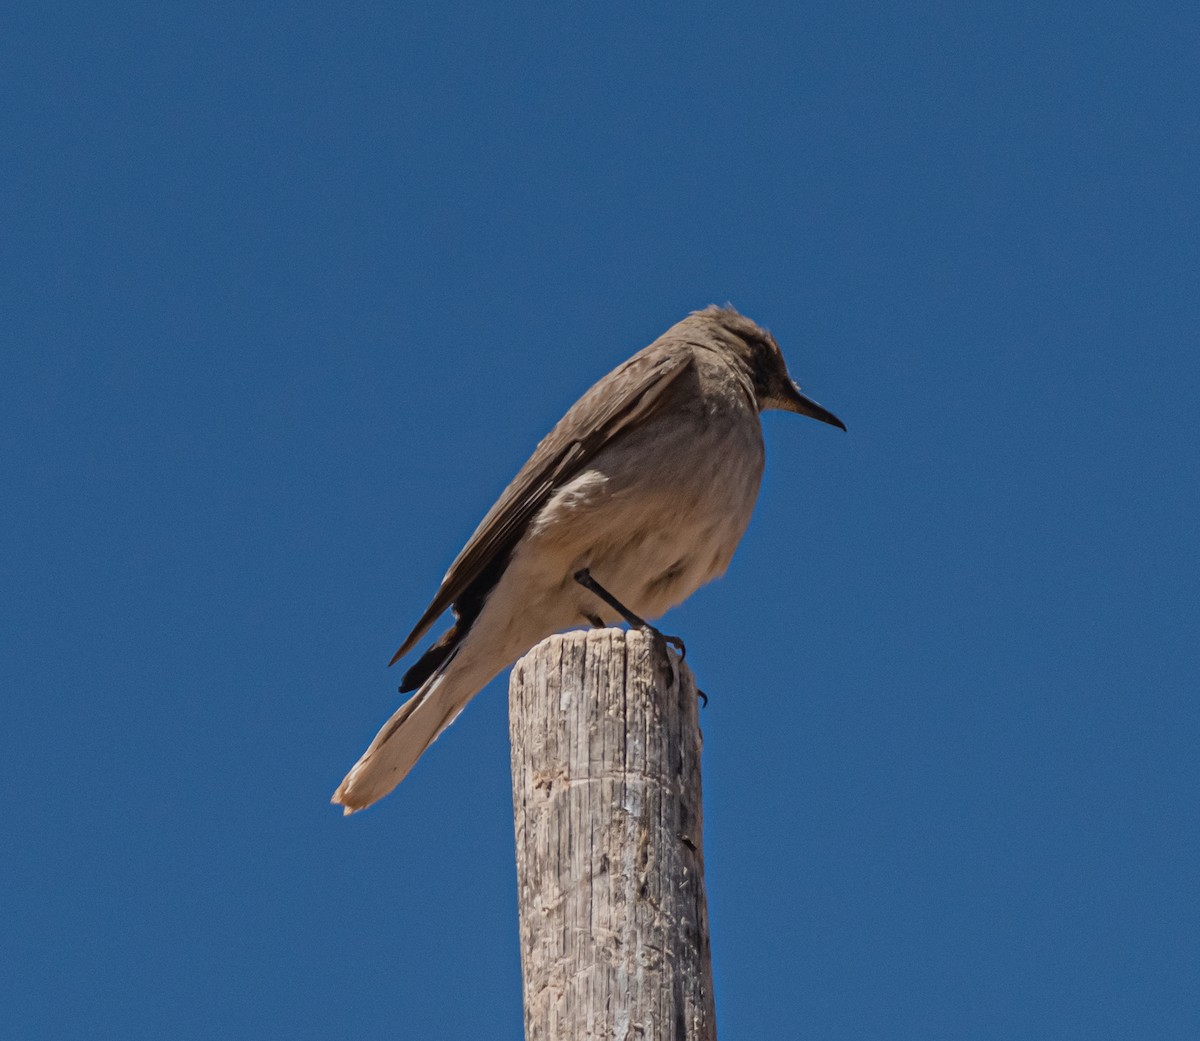 Black-billed Shrike-Tyrant - miguel sepulveda